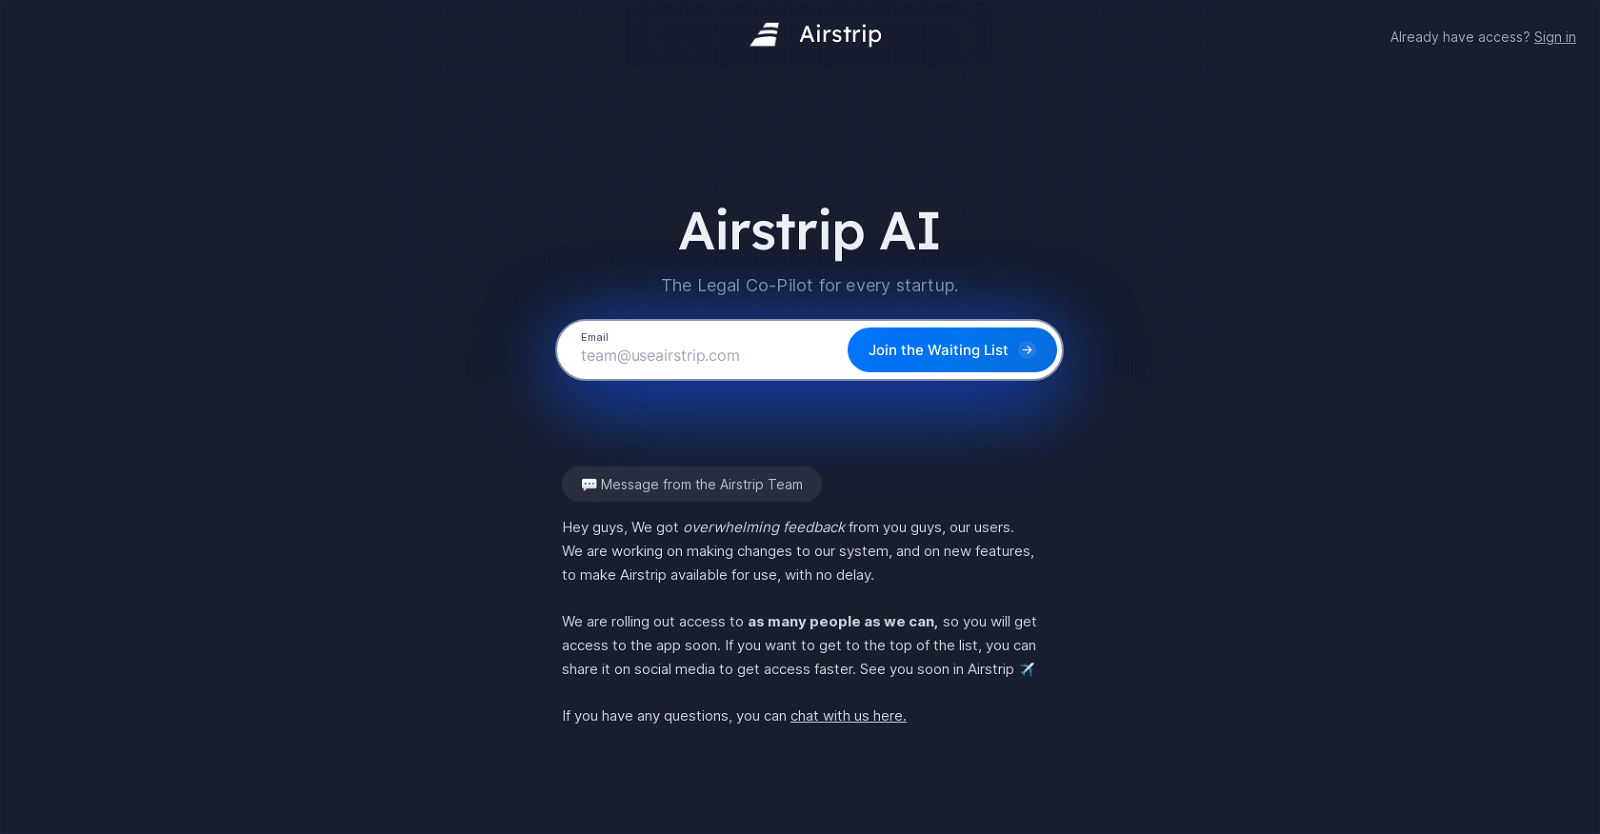 Airstrip AI website